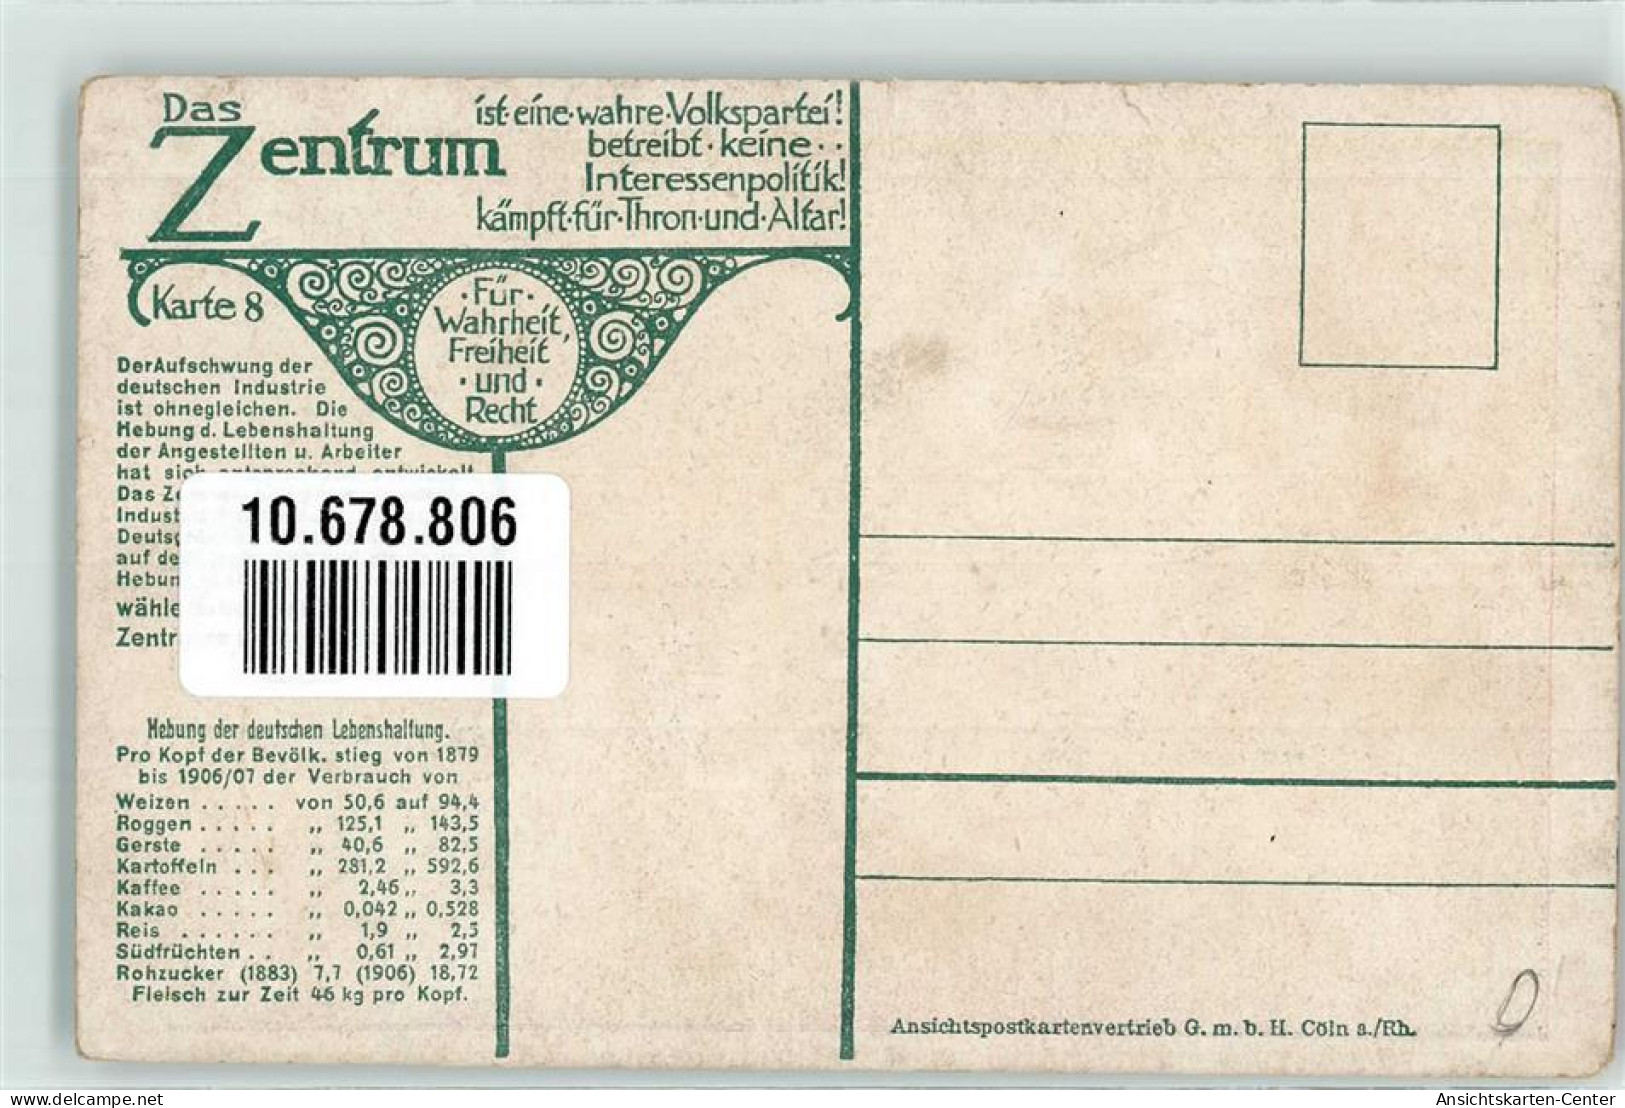 10678806 - Karte 8 Das Zentrum  Volkspartei  Industrie Politik  Anwachsen Des Deutschen Welthandels 1910 - Events